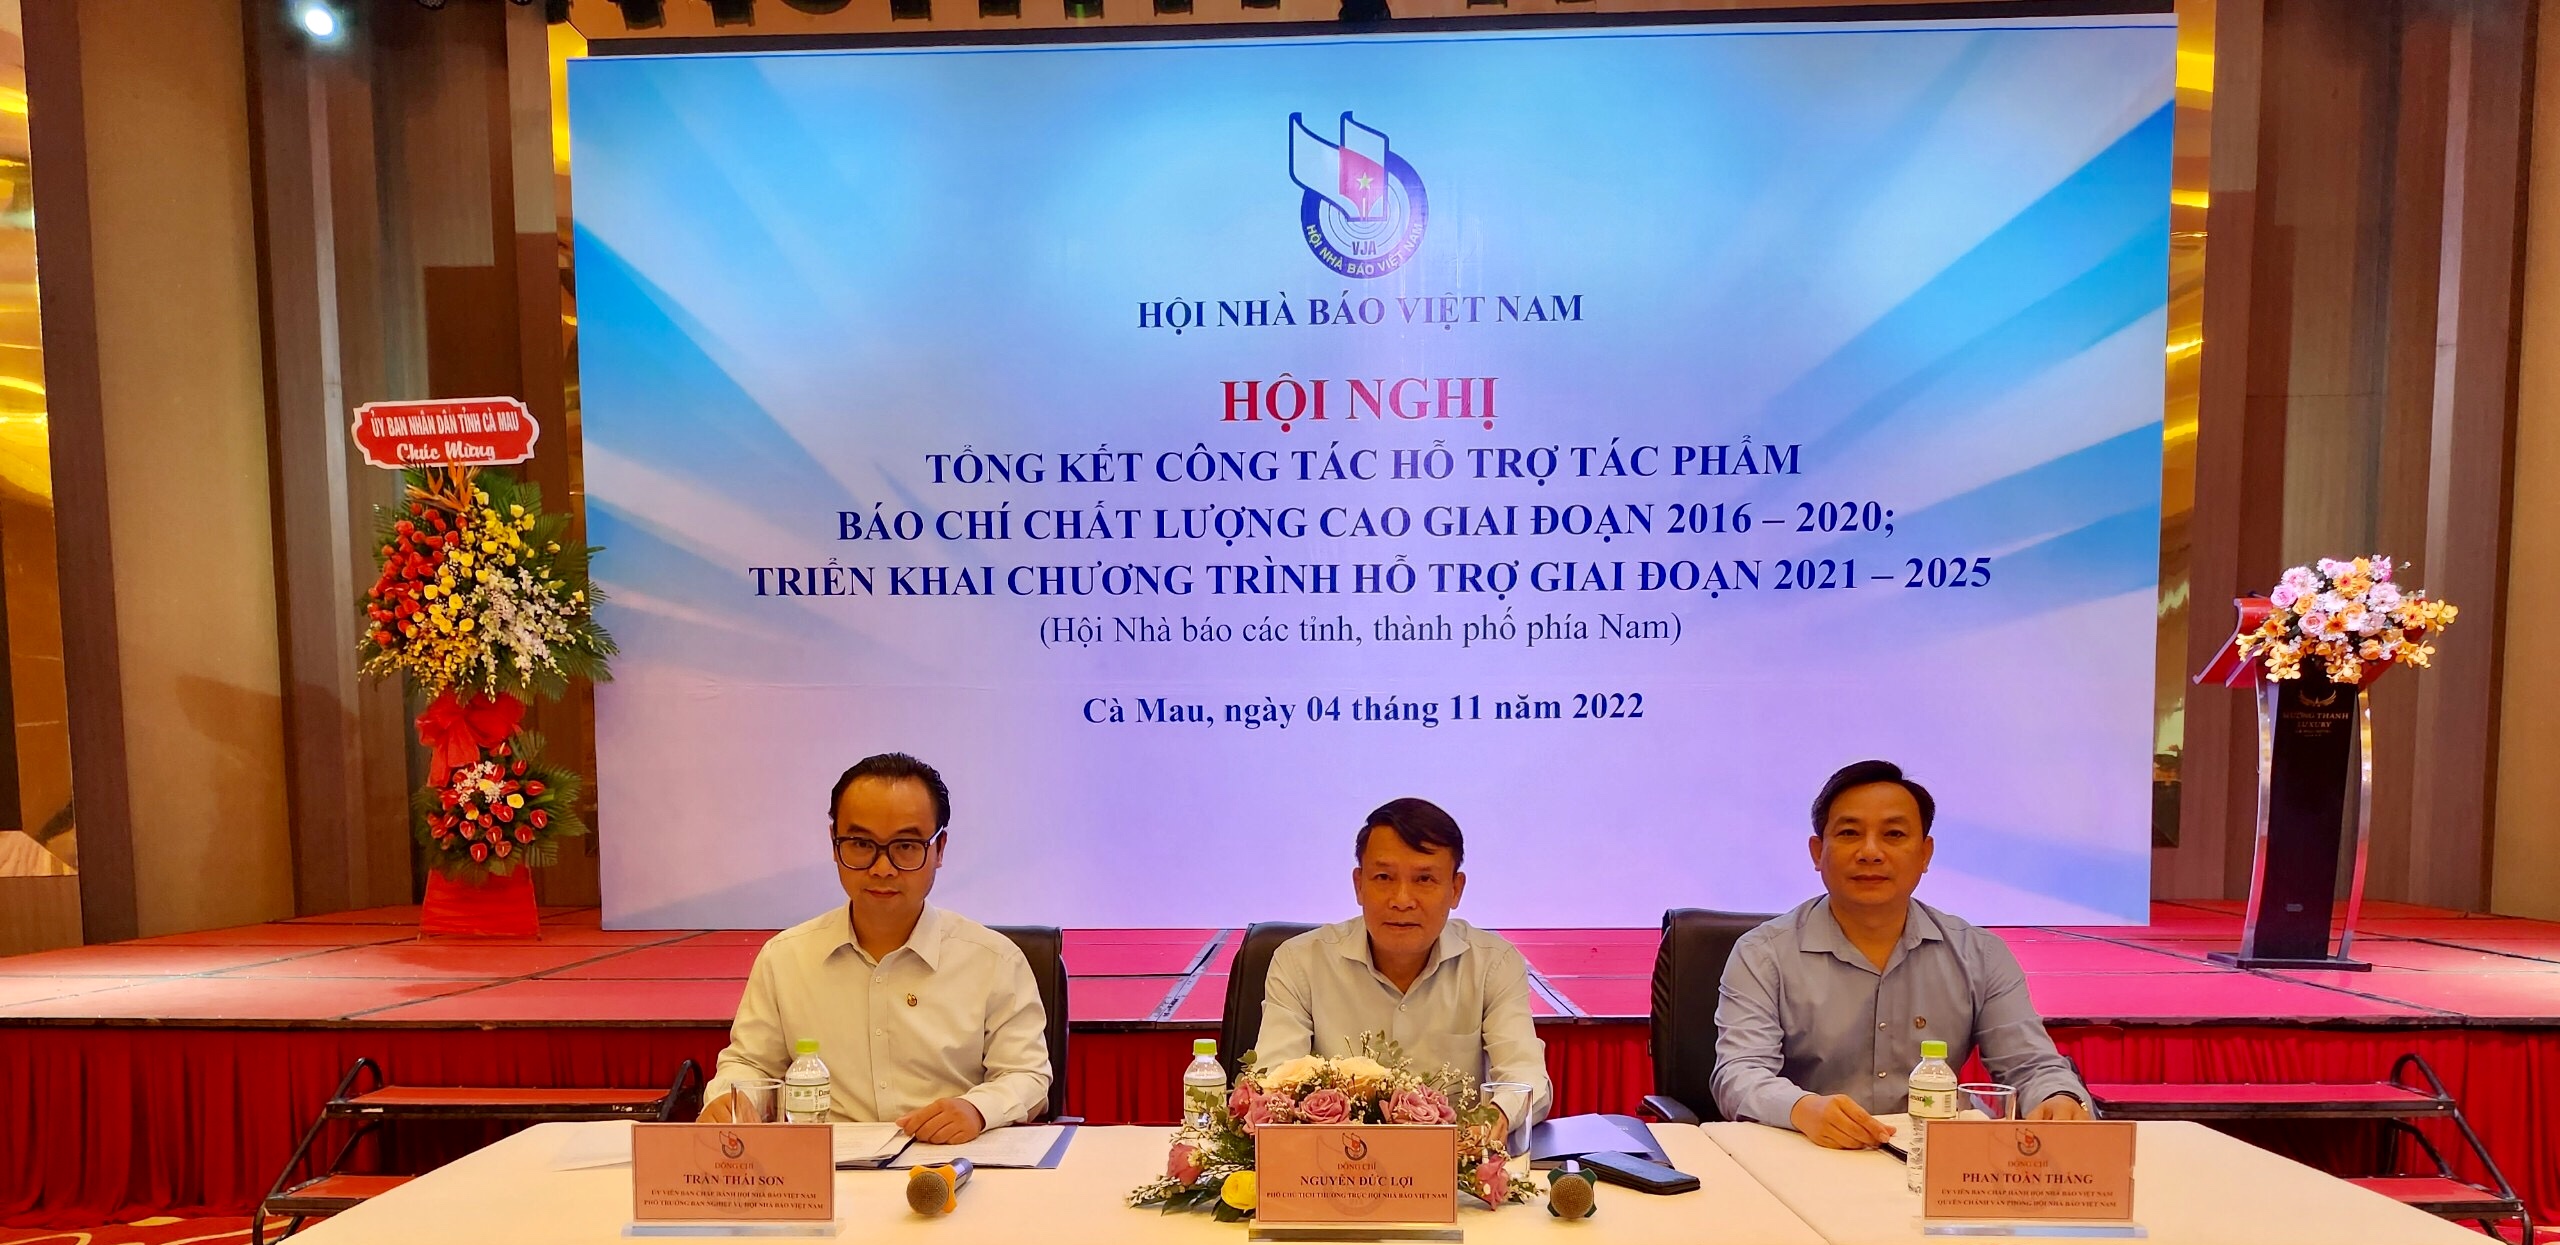 Hội Nhà báo Việt Nam tổ chức Hội nghị tổng kết công tác hỗ trợ tác phẩm báo chí chất lượng cao